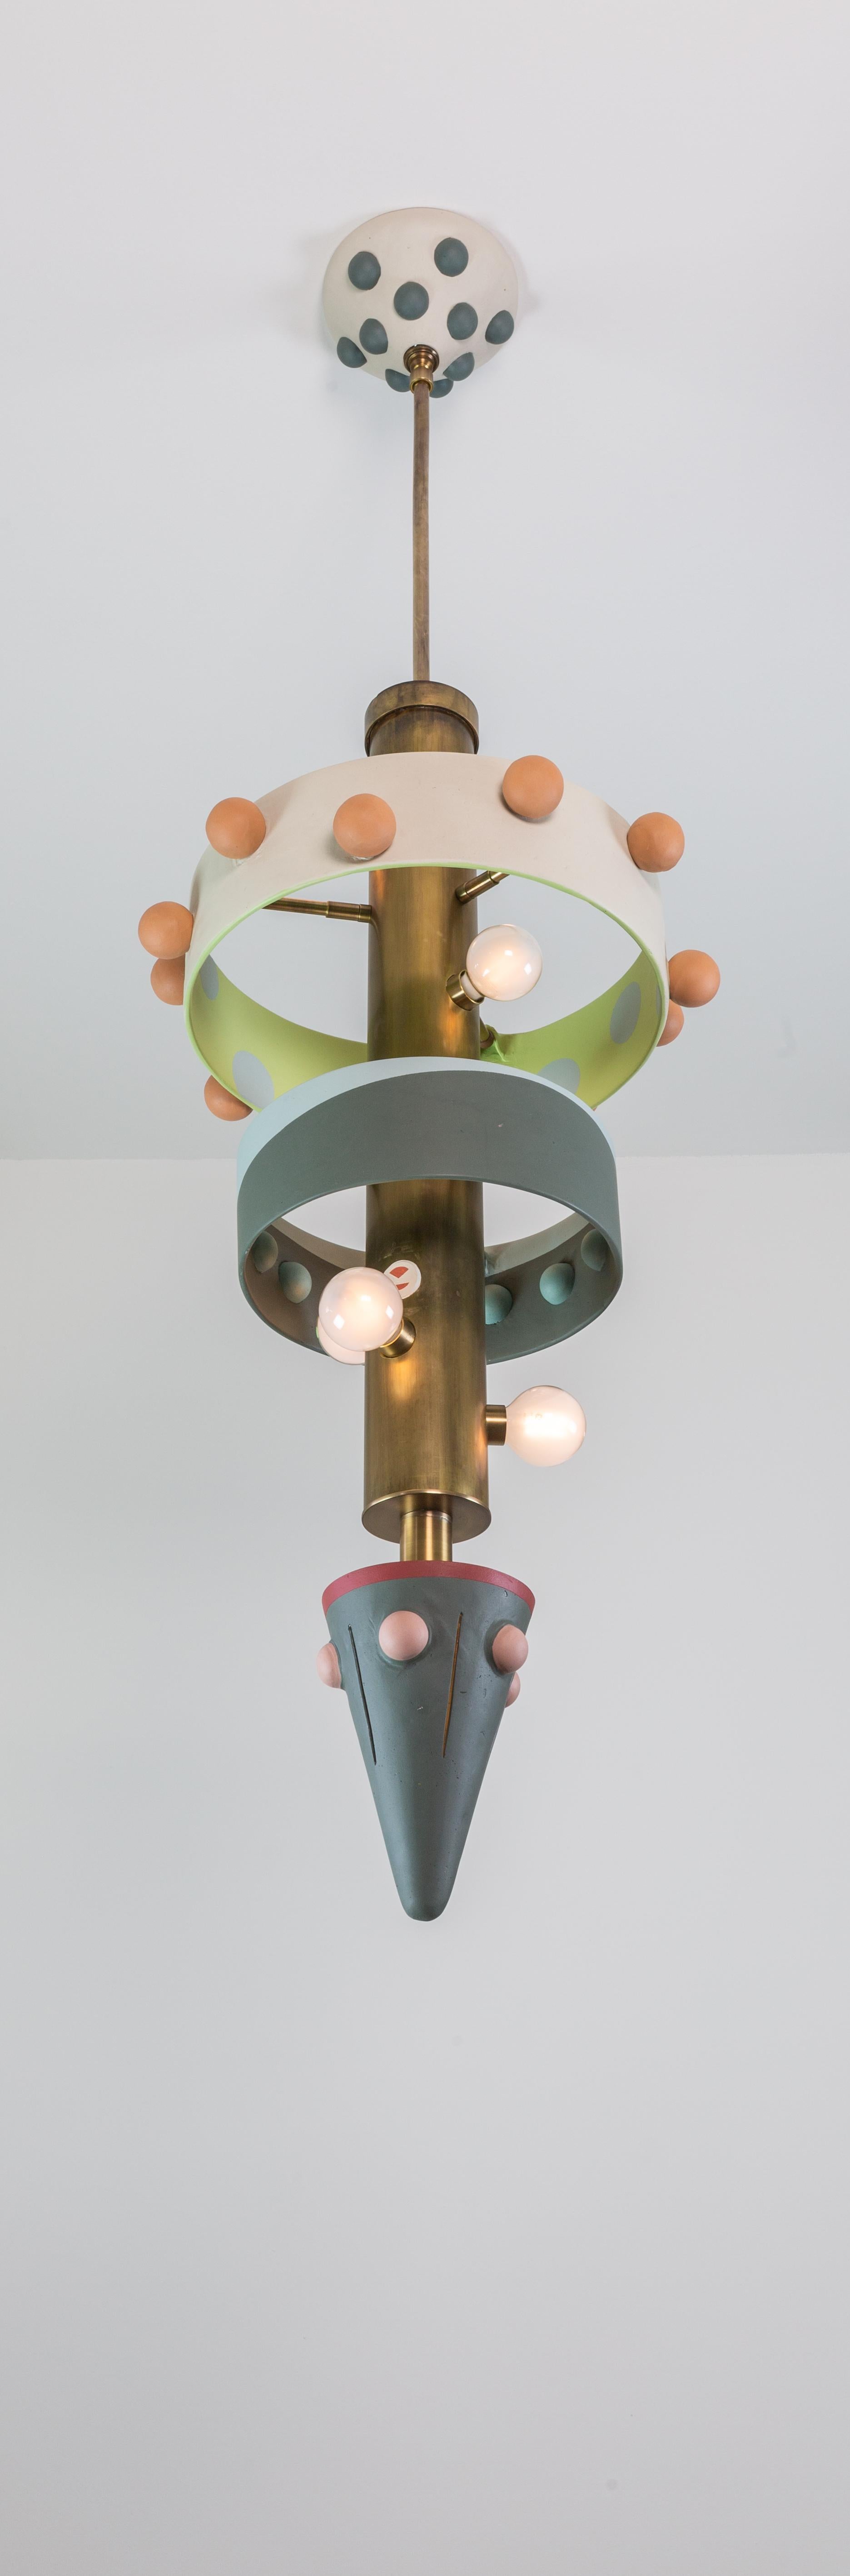 Heather est une lampe à suspension, faisant partie de la collection Posse, un système conçu autour des idées fondamentales de collaboration et de jeu.

Le pendentif a été créé pour donner à le client la liberté de personnaliser sa propre